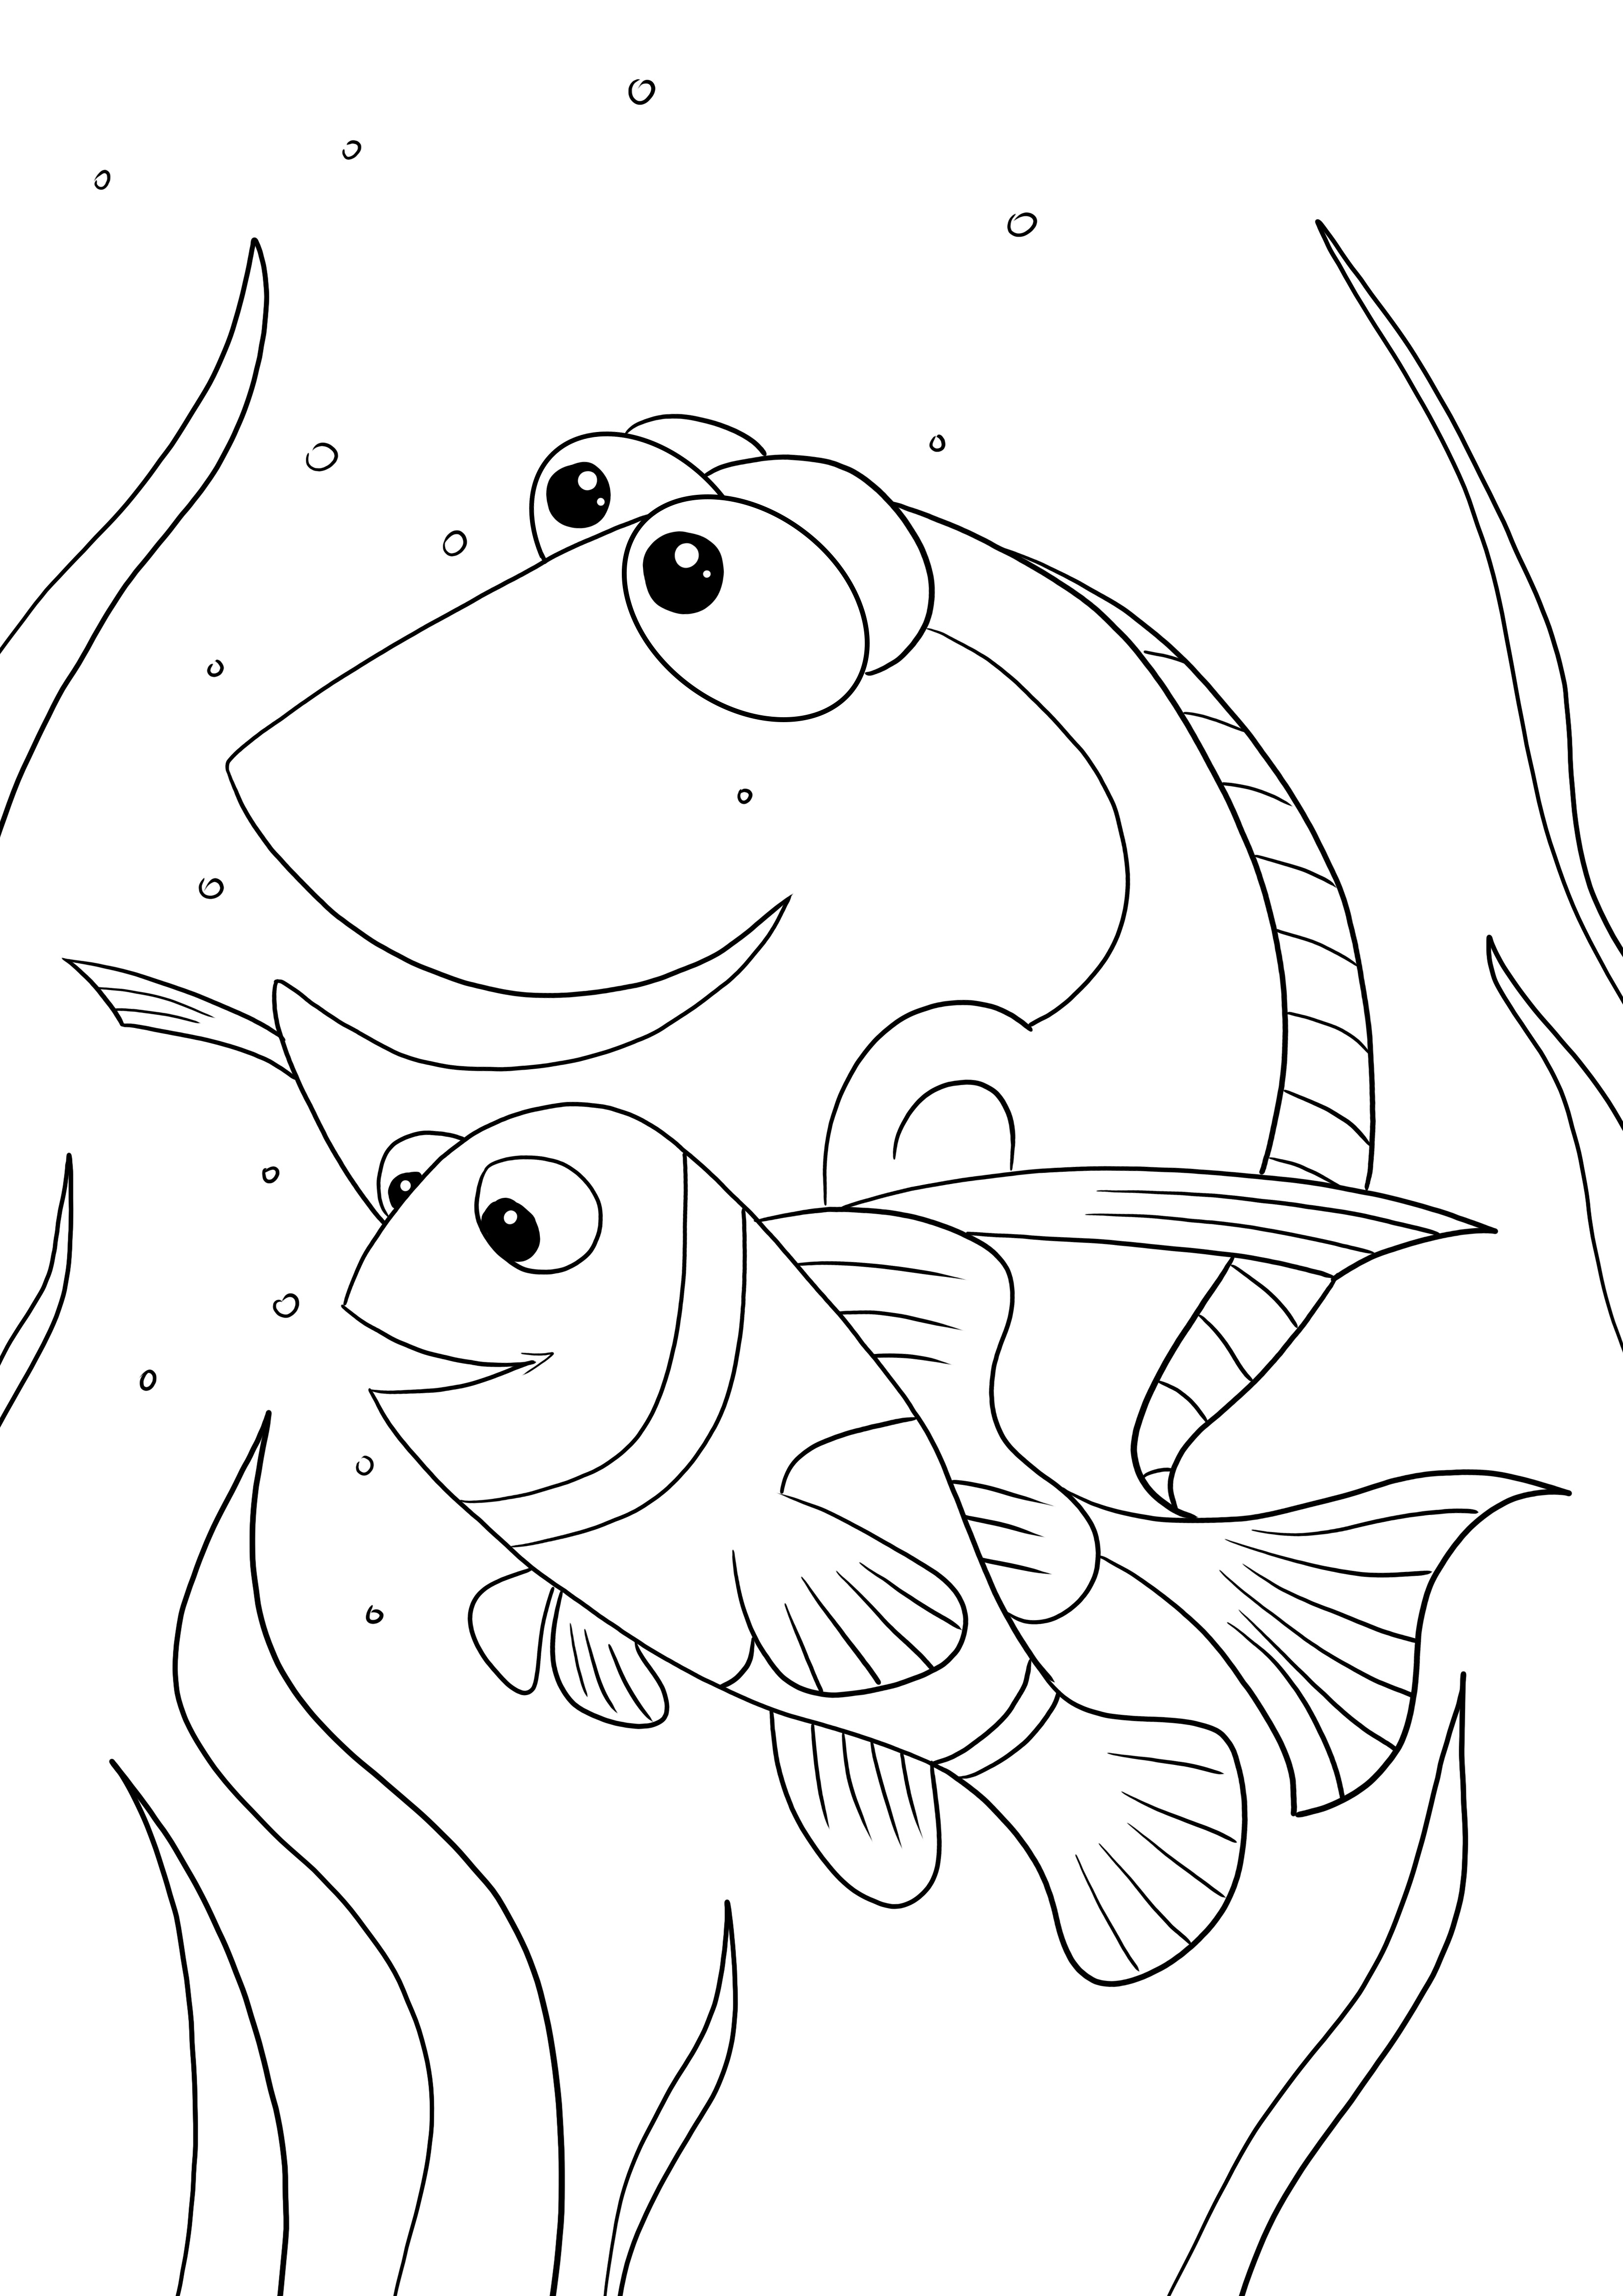 Trouver la page d'impression de Nemo pour les enfants image de coloriage facile et gratuite